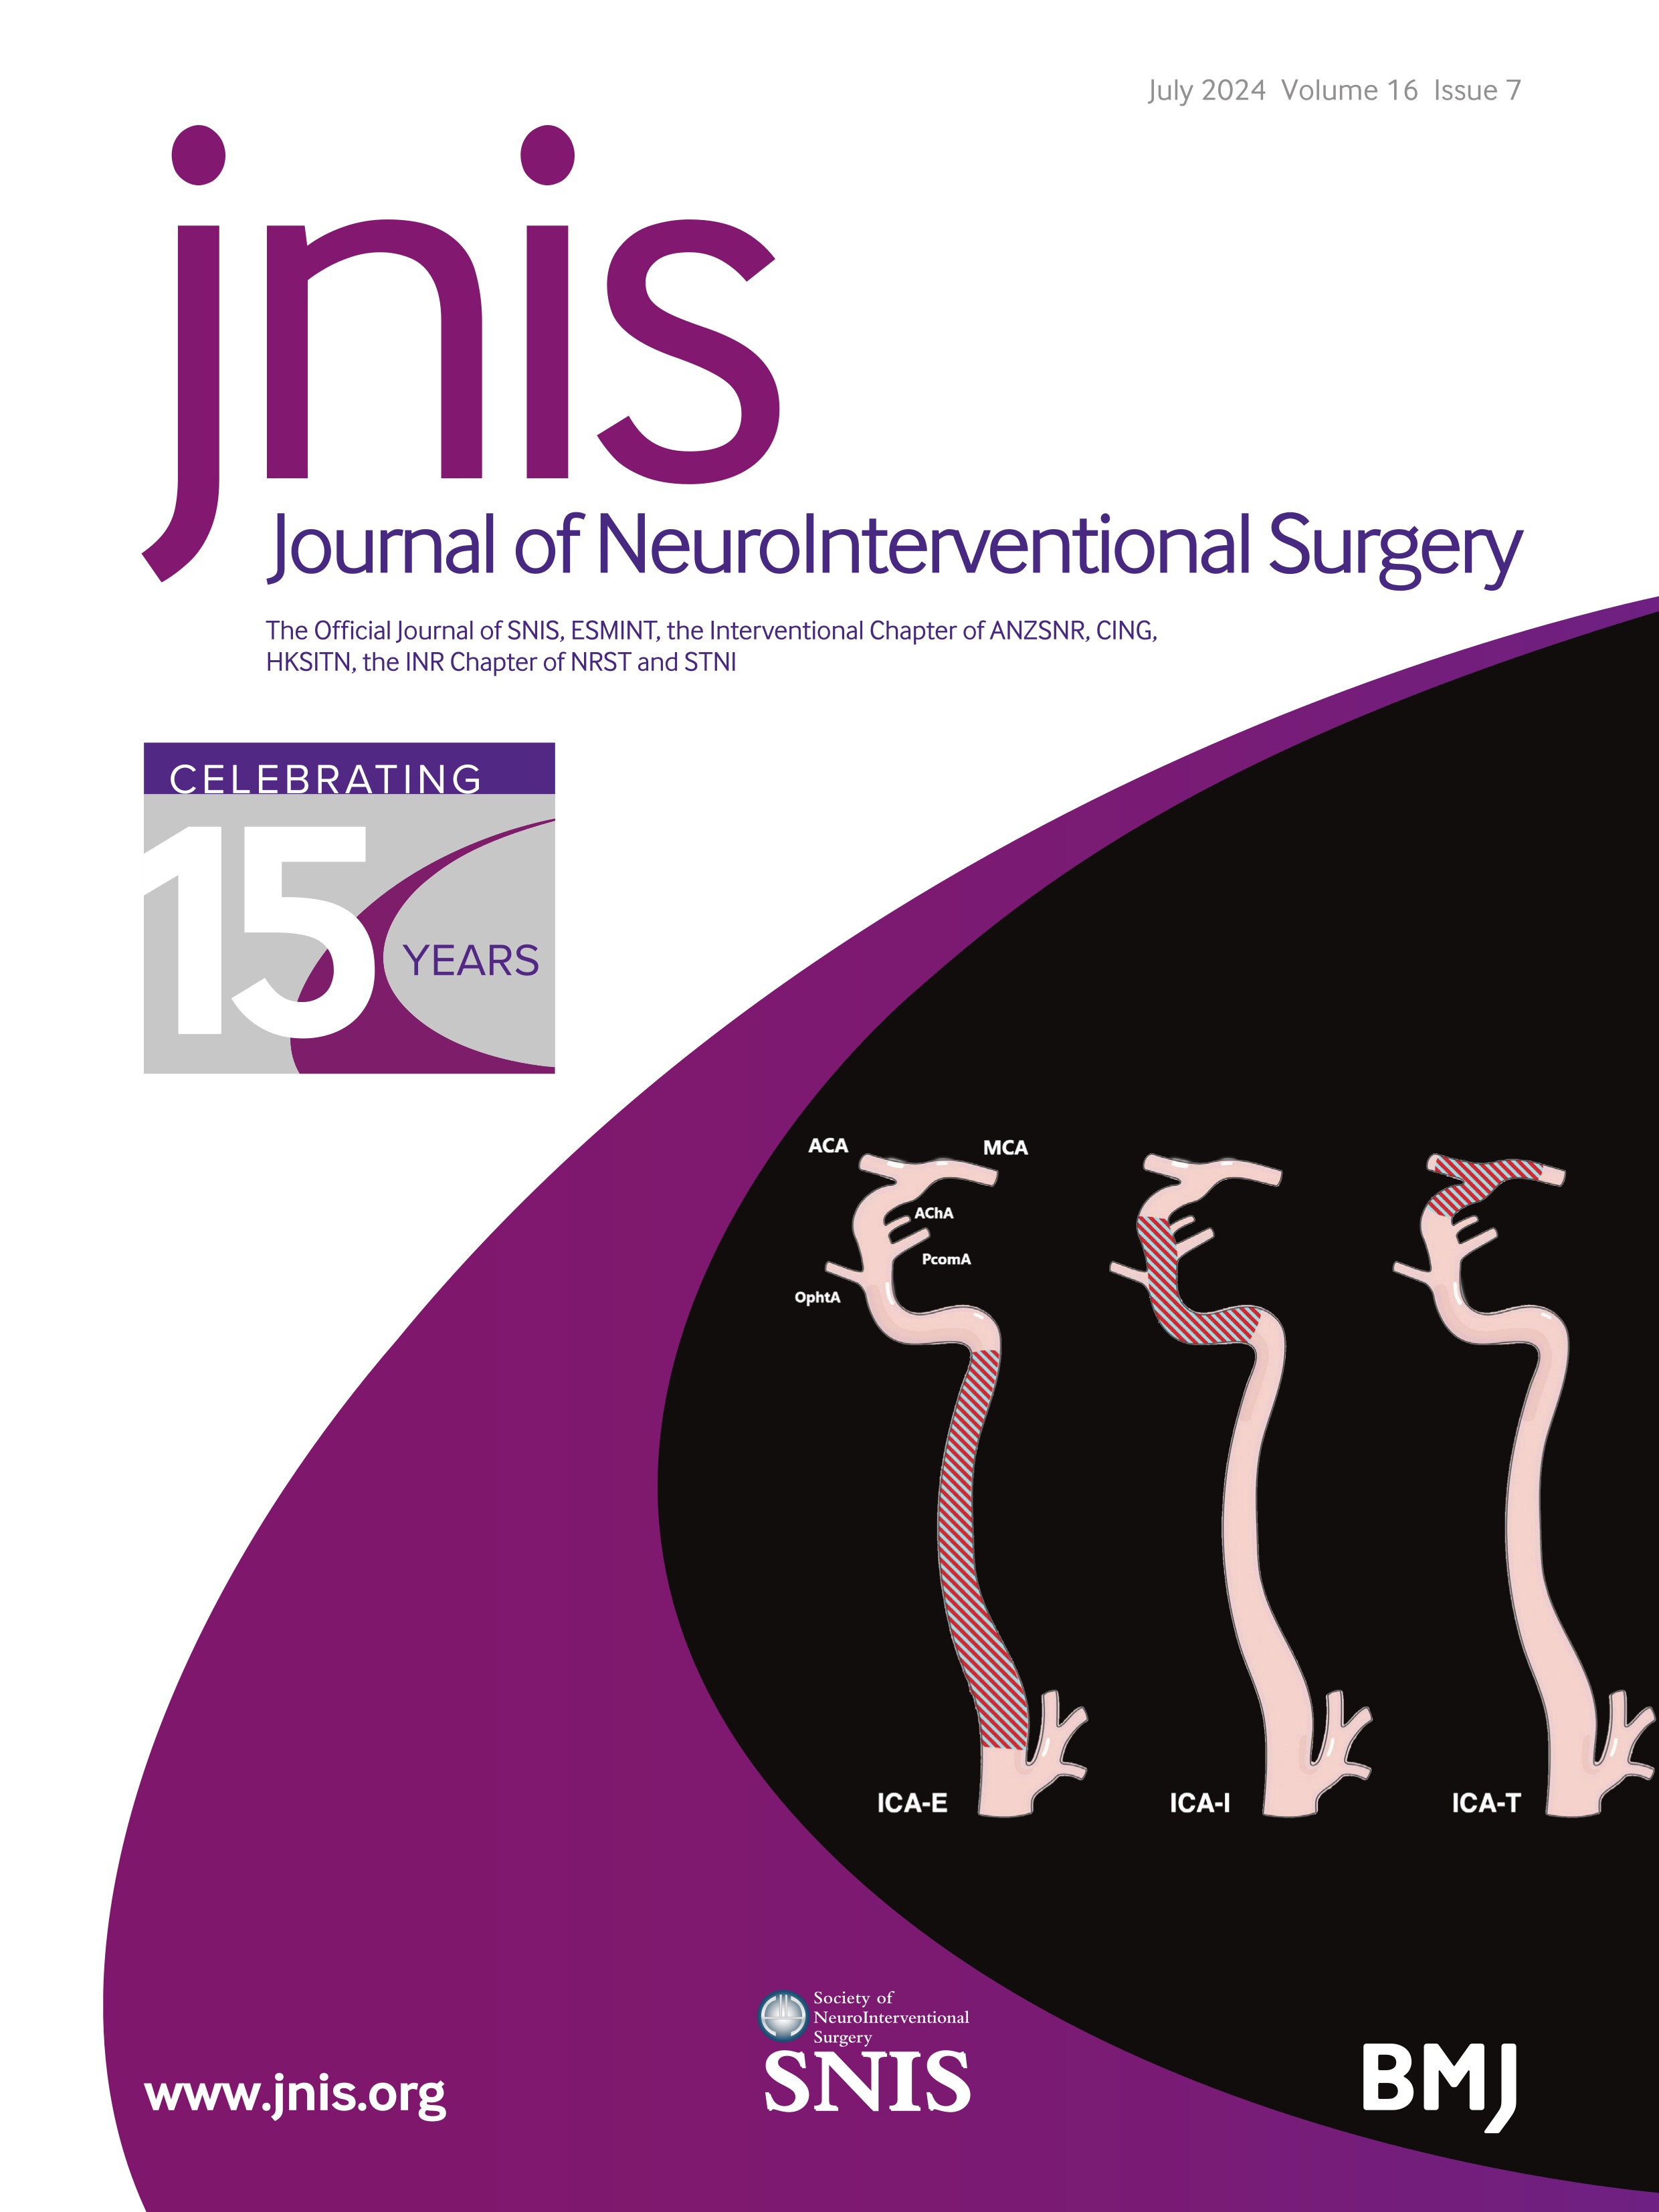 Transarterial embolization for anterior cranial fossa dural arteriovenous fistulas: a retrospective single-center study